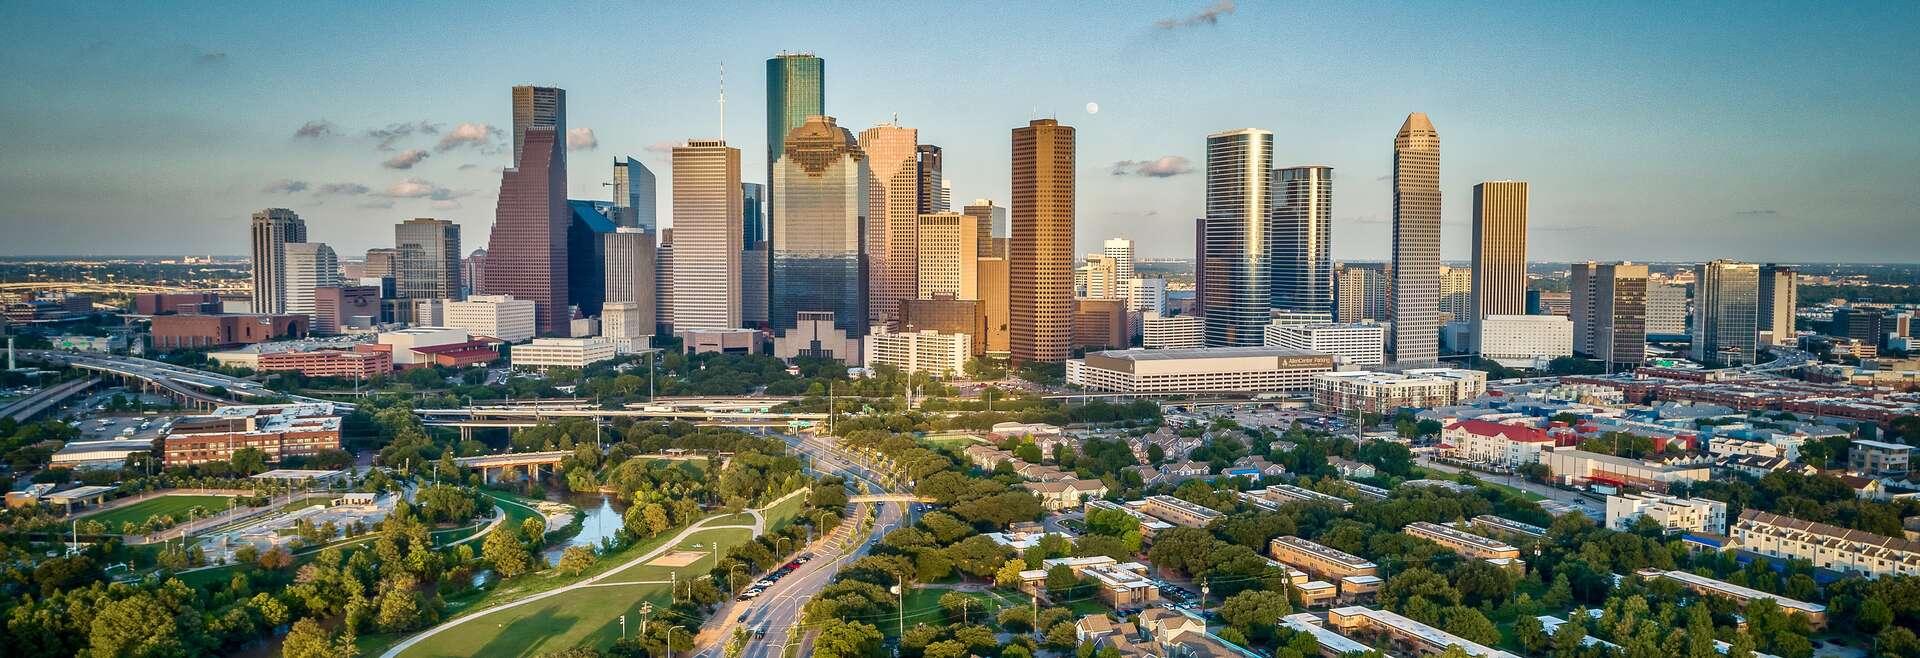 Séjour linguistique États-Unis, Houston, Skyline